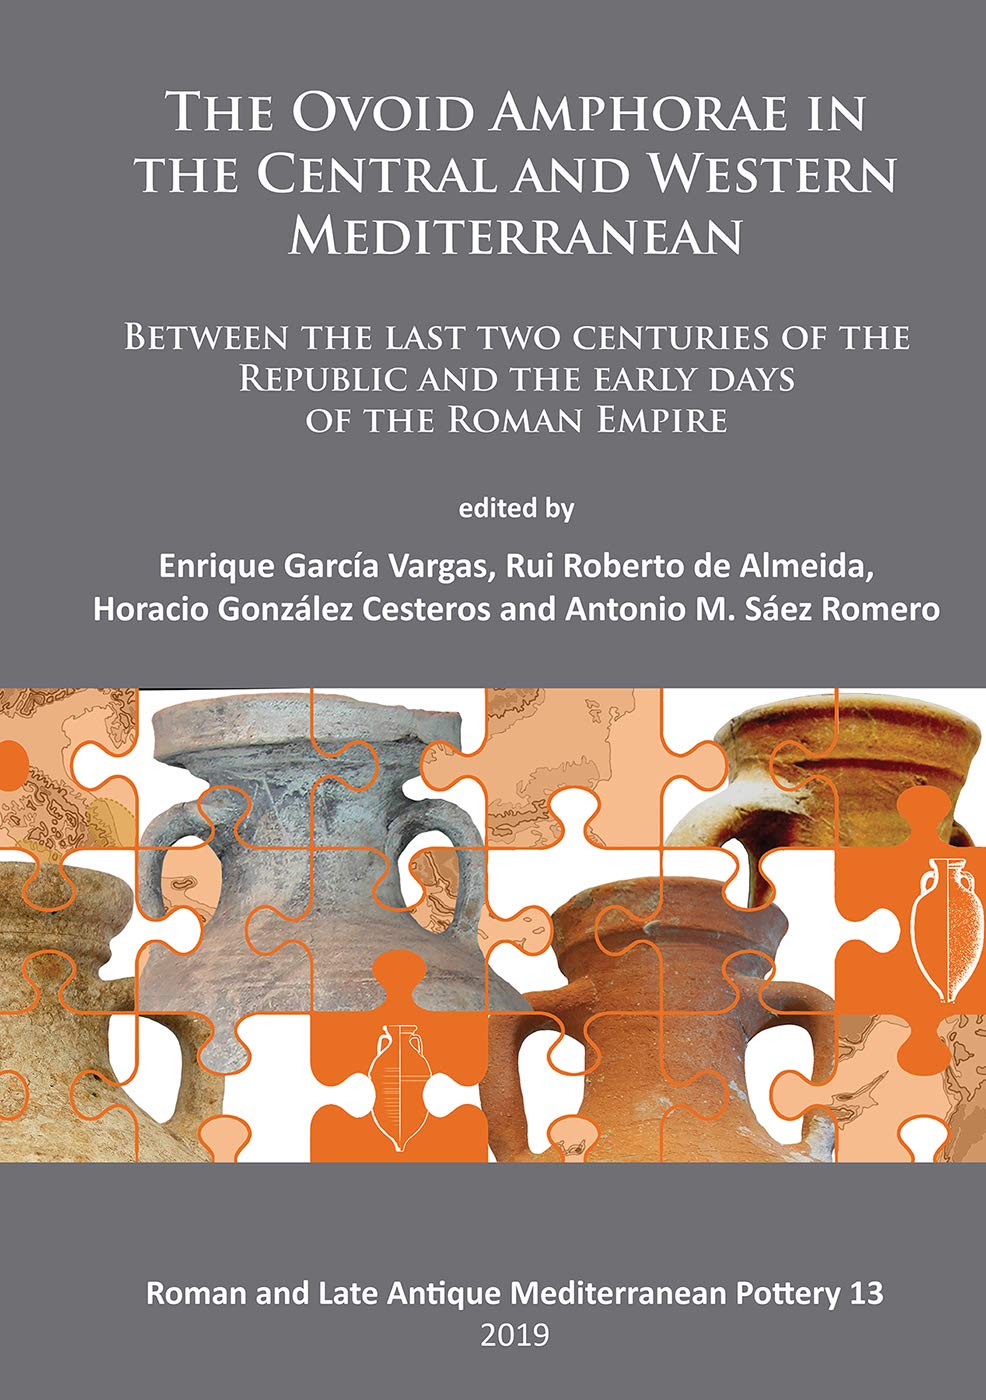 Imagen de portada del libro The ovoid amphorae in the central and western Mediterranean